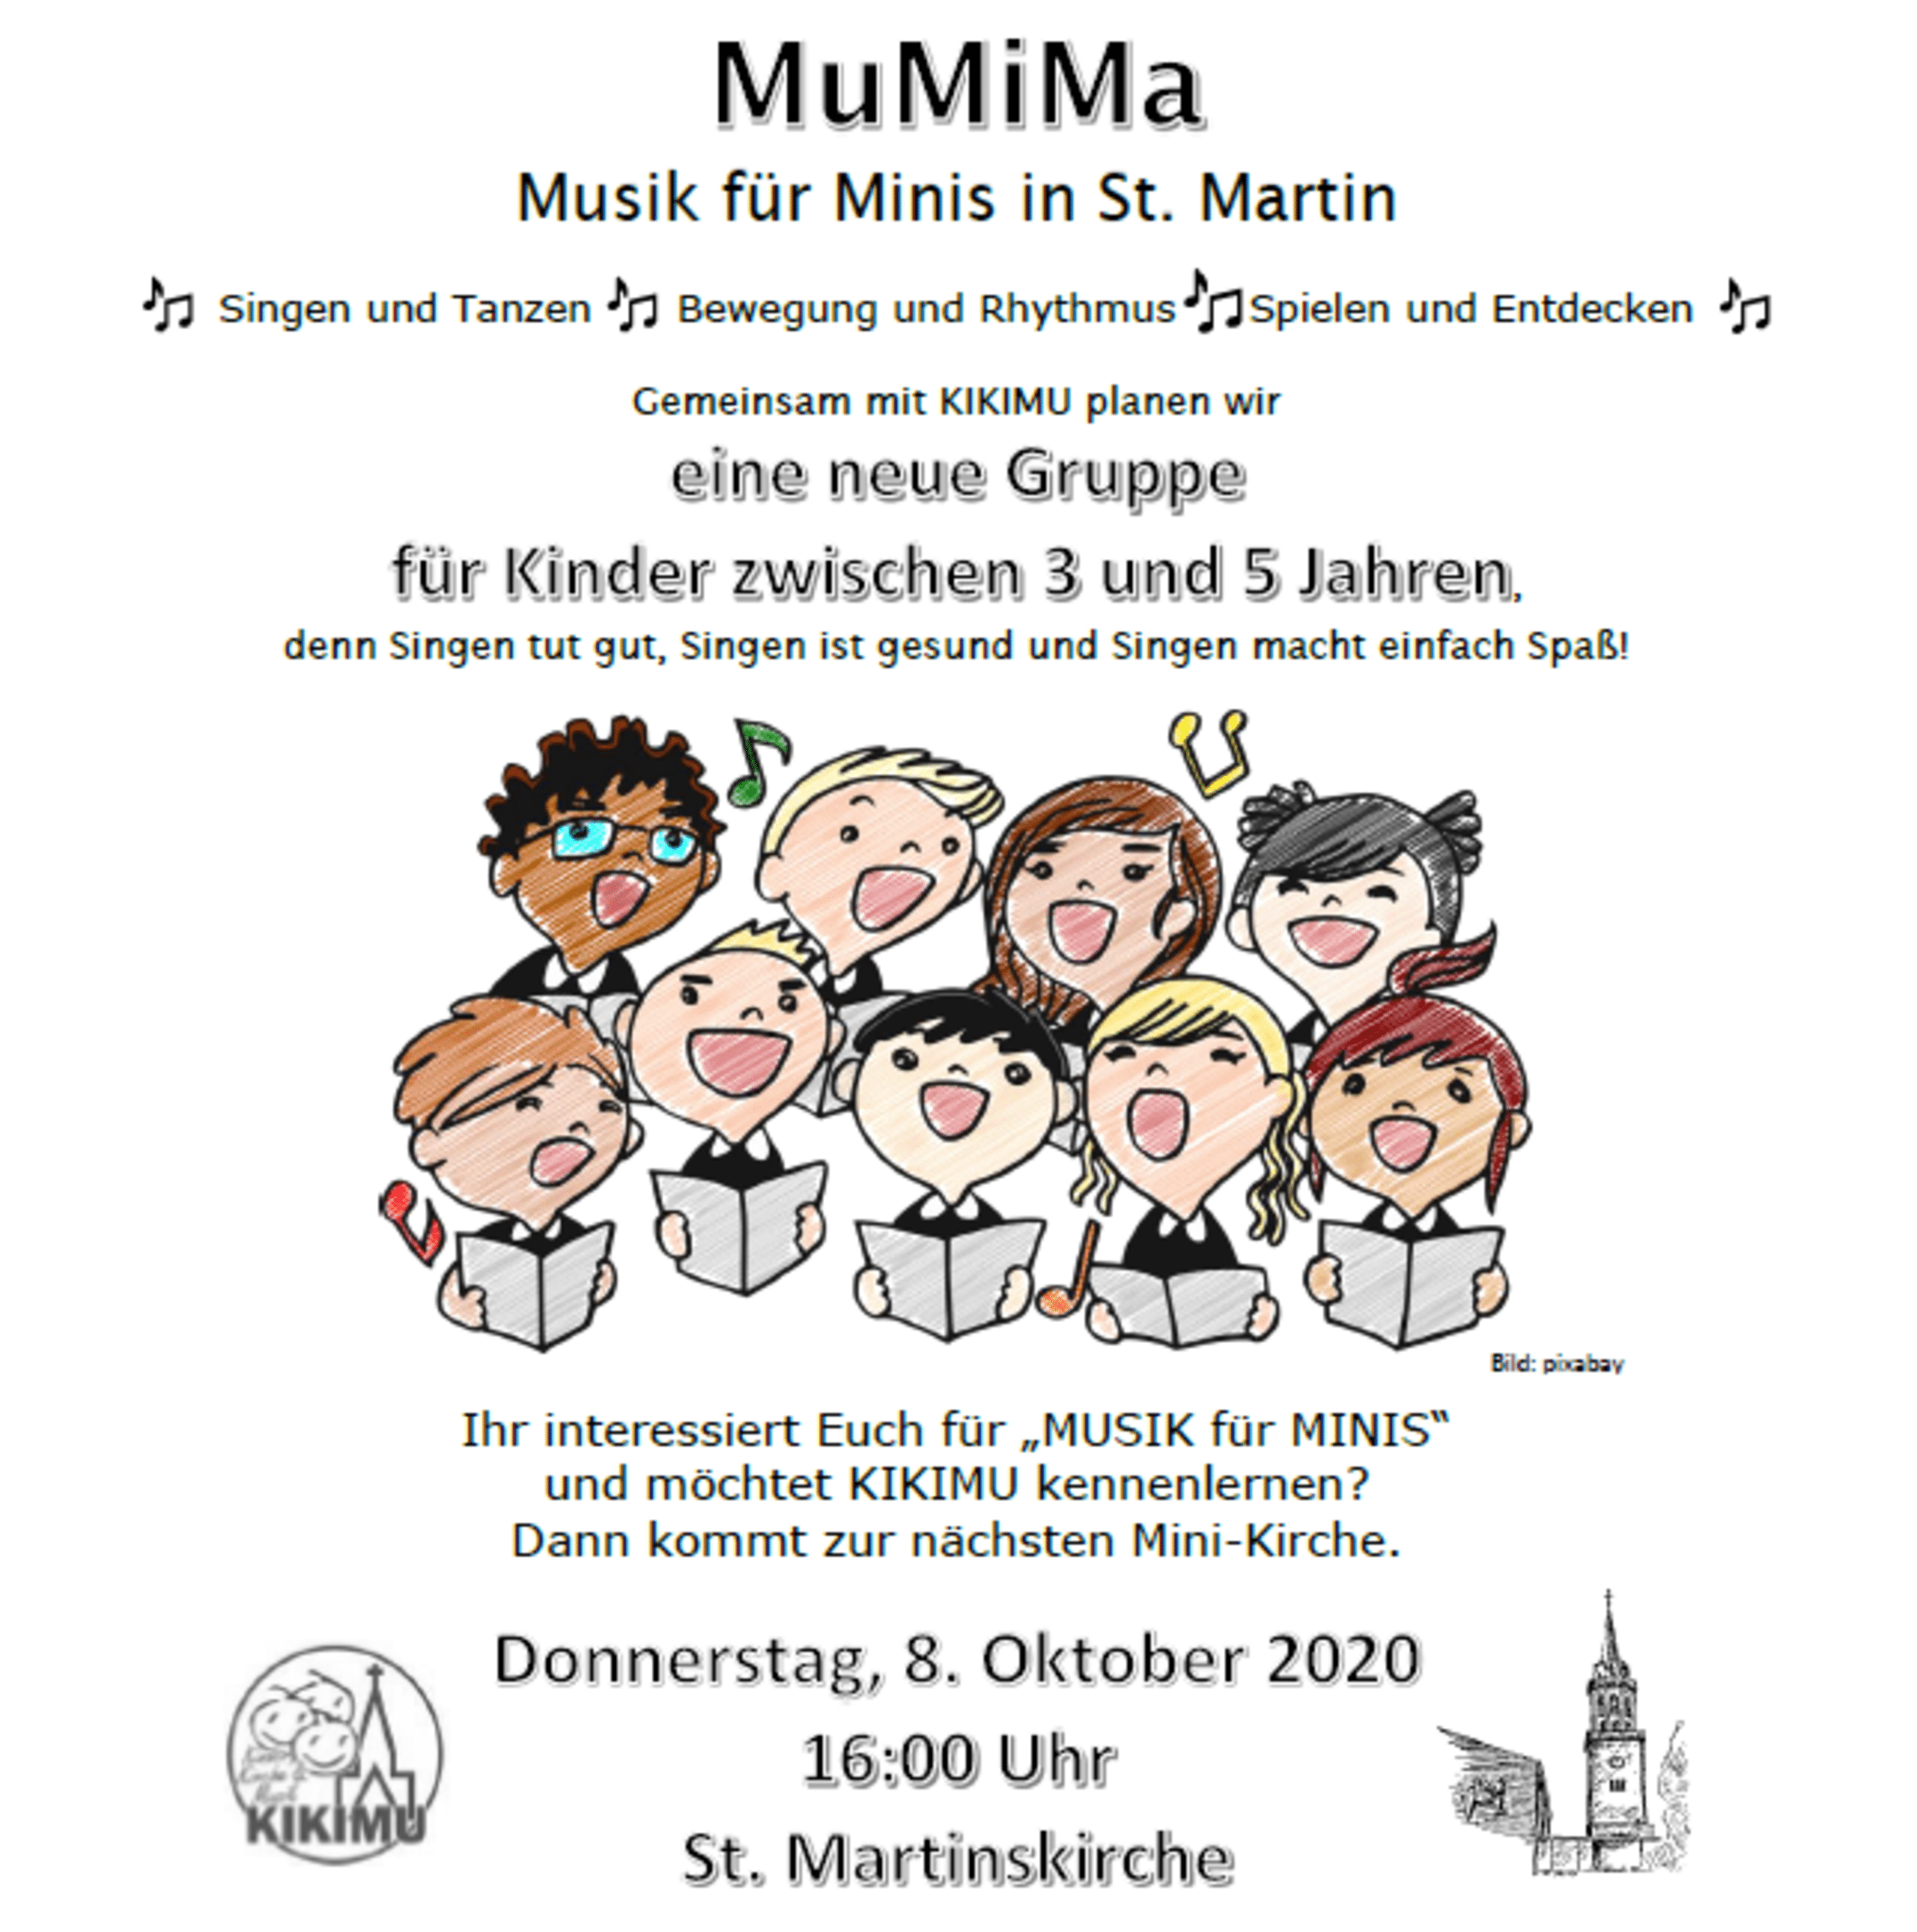 MuMiMa - Musik für Minis in St. Martin